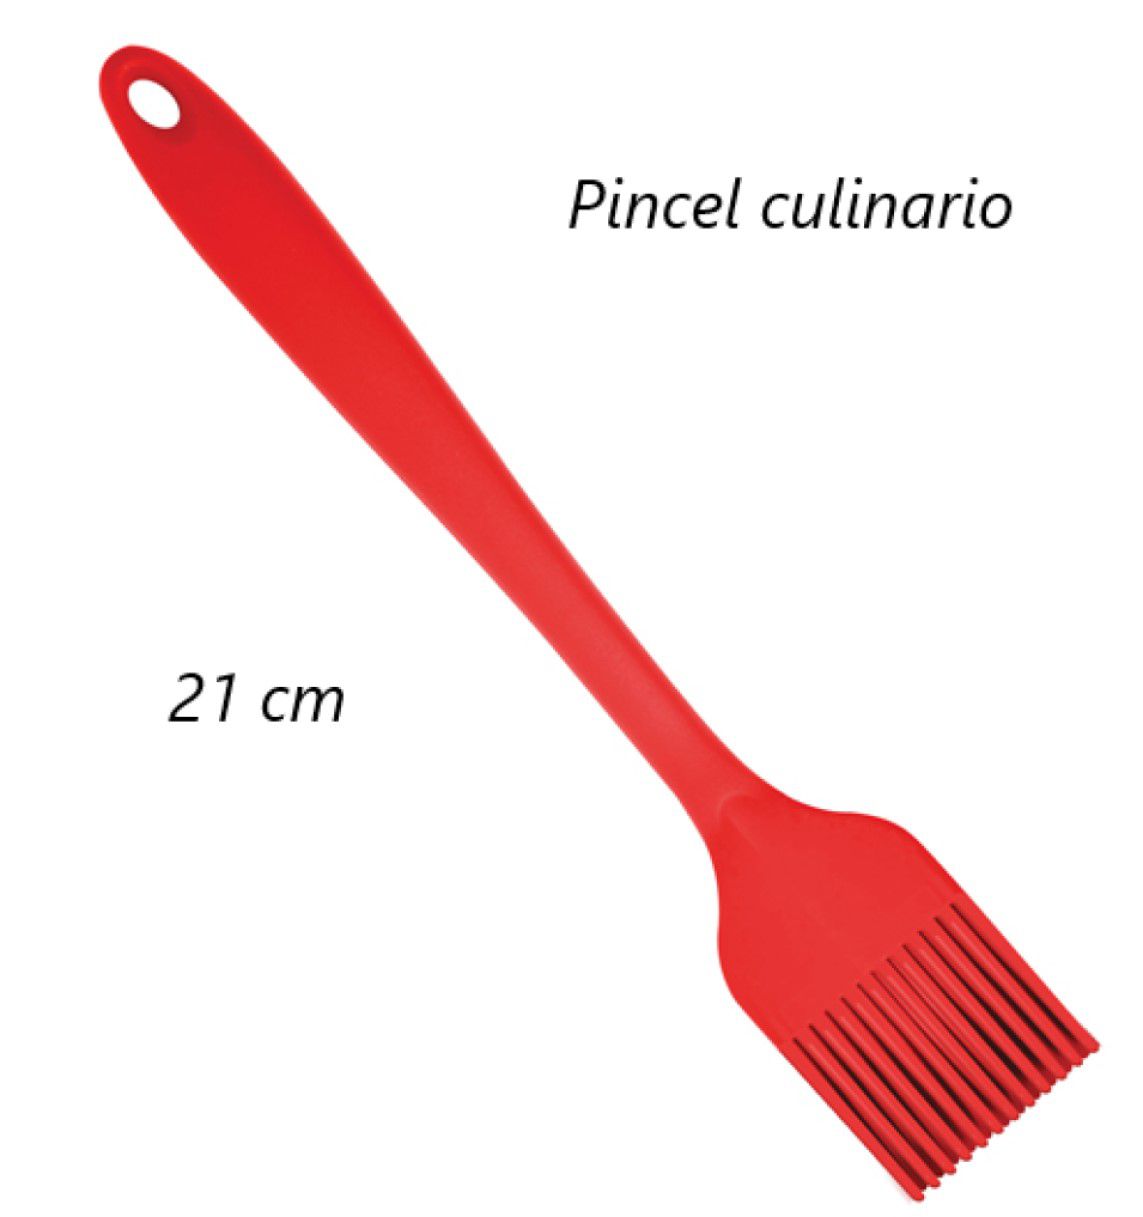 Pincel culinario de silicone untar confeitar 21cm vermelho uni191309